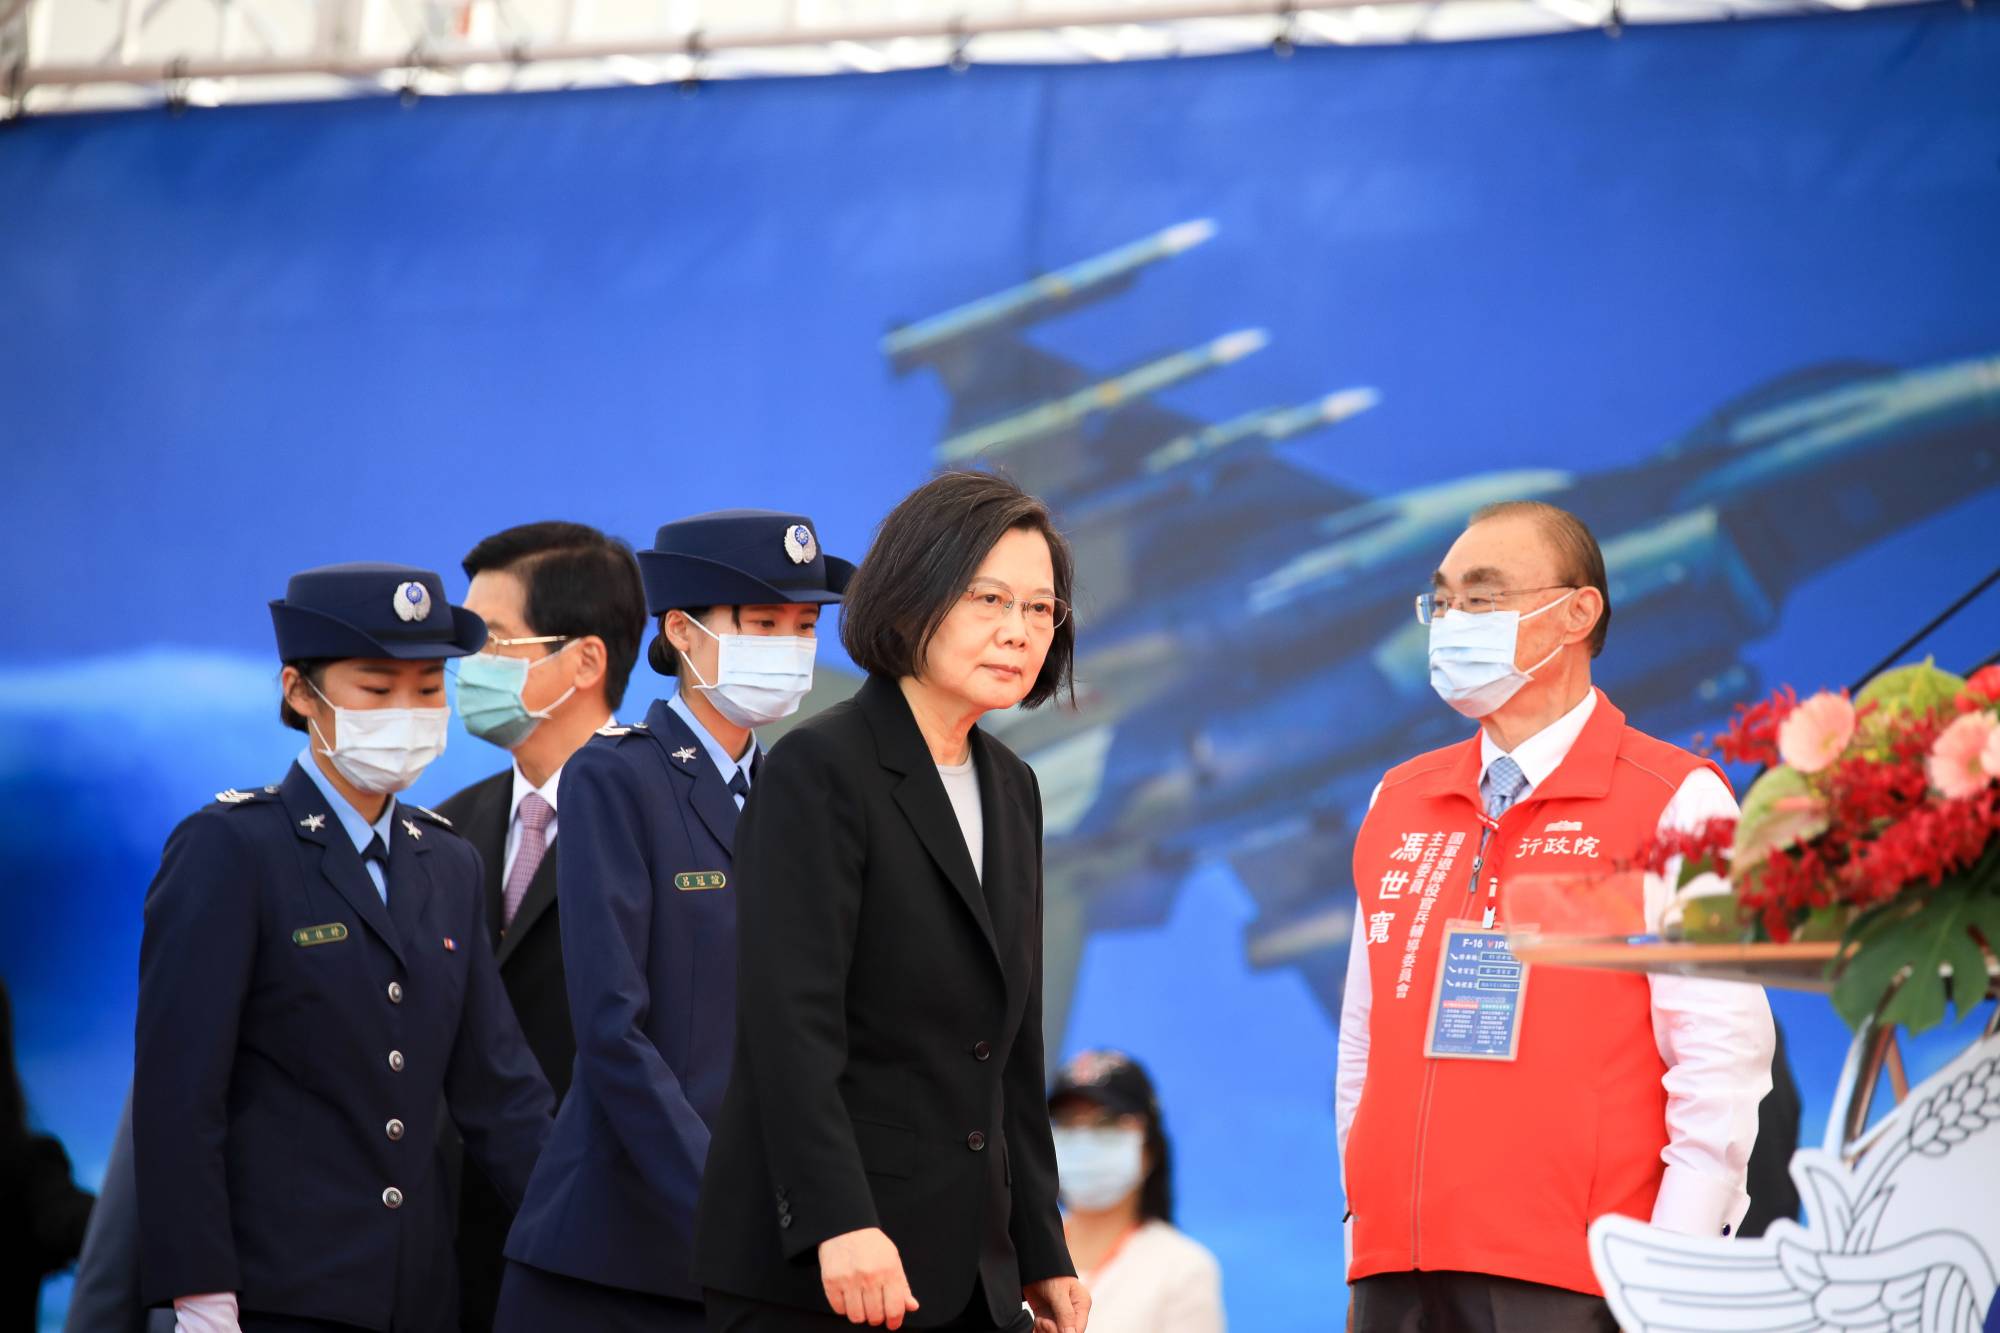 Nhà lãnh đạo Đài Loan đang theo đuổi một chính sách cứng rắn với Trung Quốc